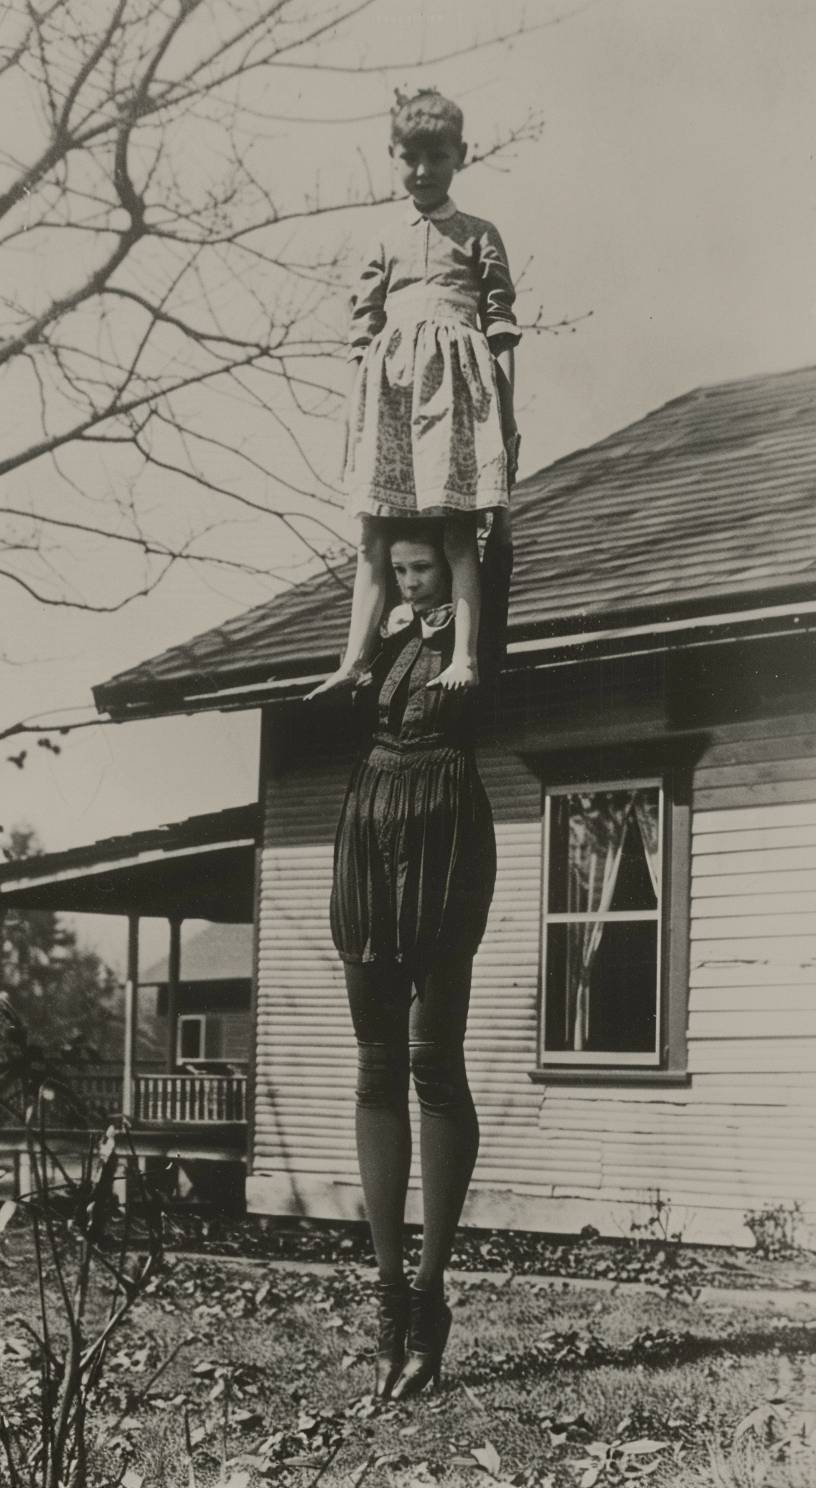 背の高い女性の長い脚と無駄に高いような足を持つ、持ち上げられた短髪の娘を片手で支える写真。家の前庭に立っており、20年代の写真で、不気味なホラーシーンが描かれています。